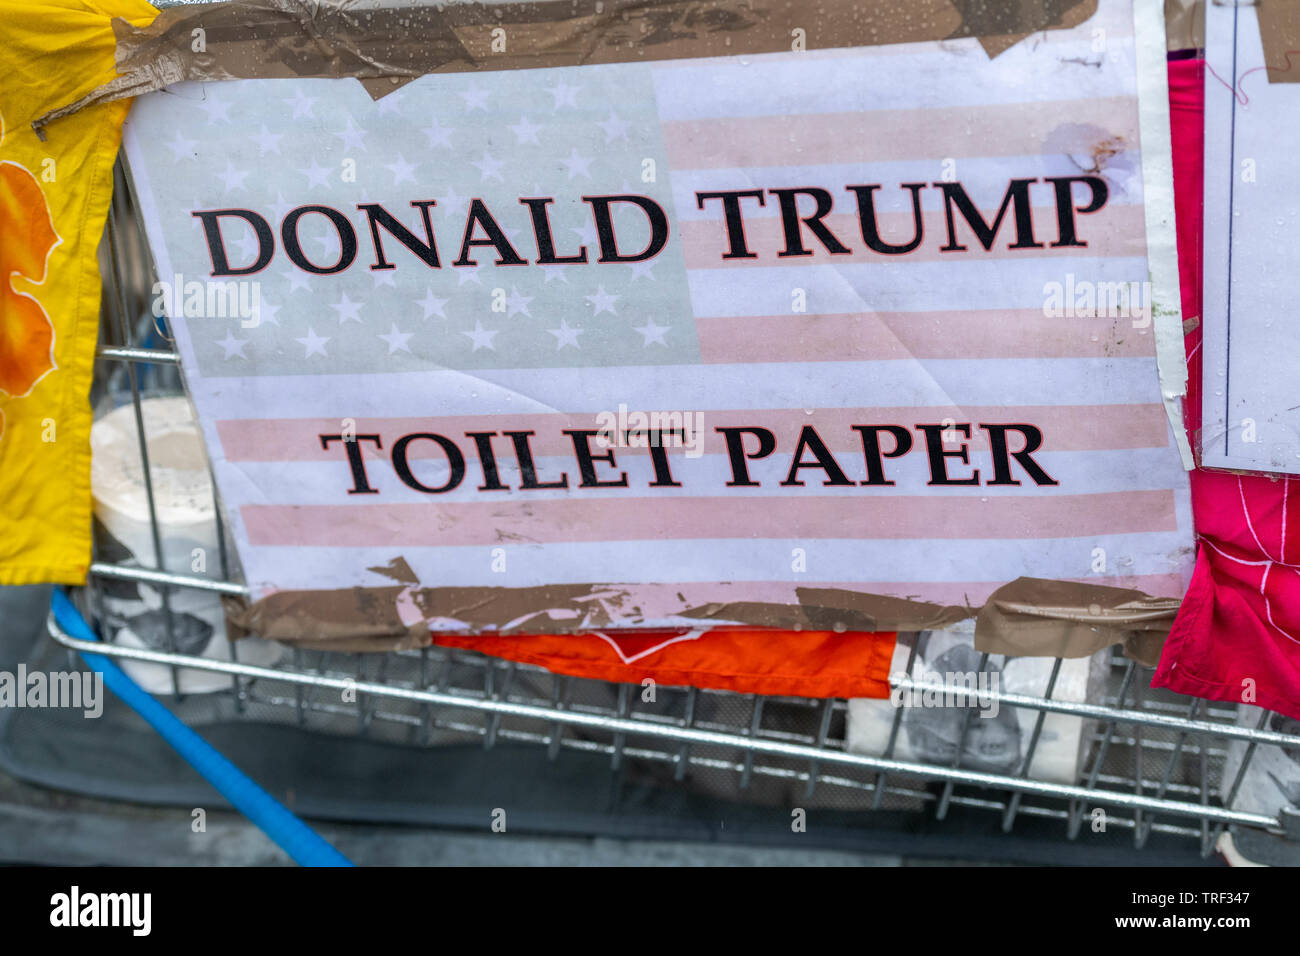 Londres 4 juin 2019 des manifestations anti Trump Donald Trump Place du Parlement dans le papier de toilette Crédit : Ian Davidson/Alamy Live News Banque D'Images